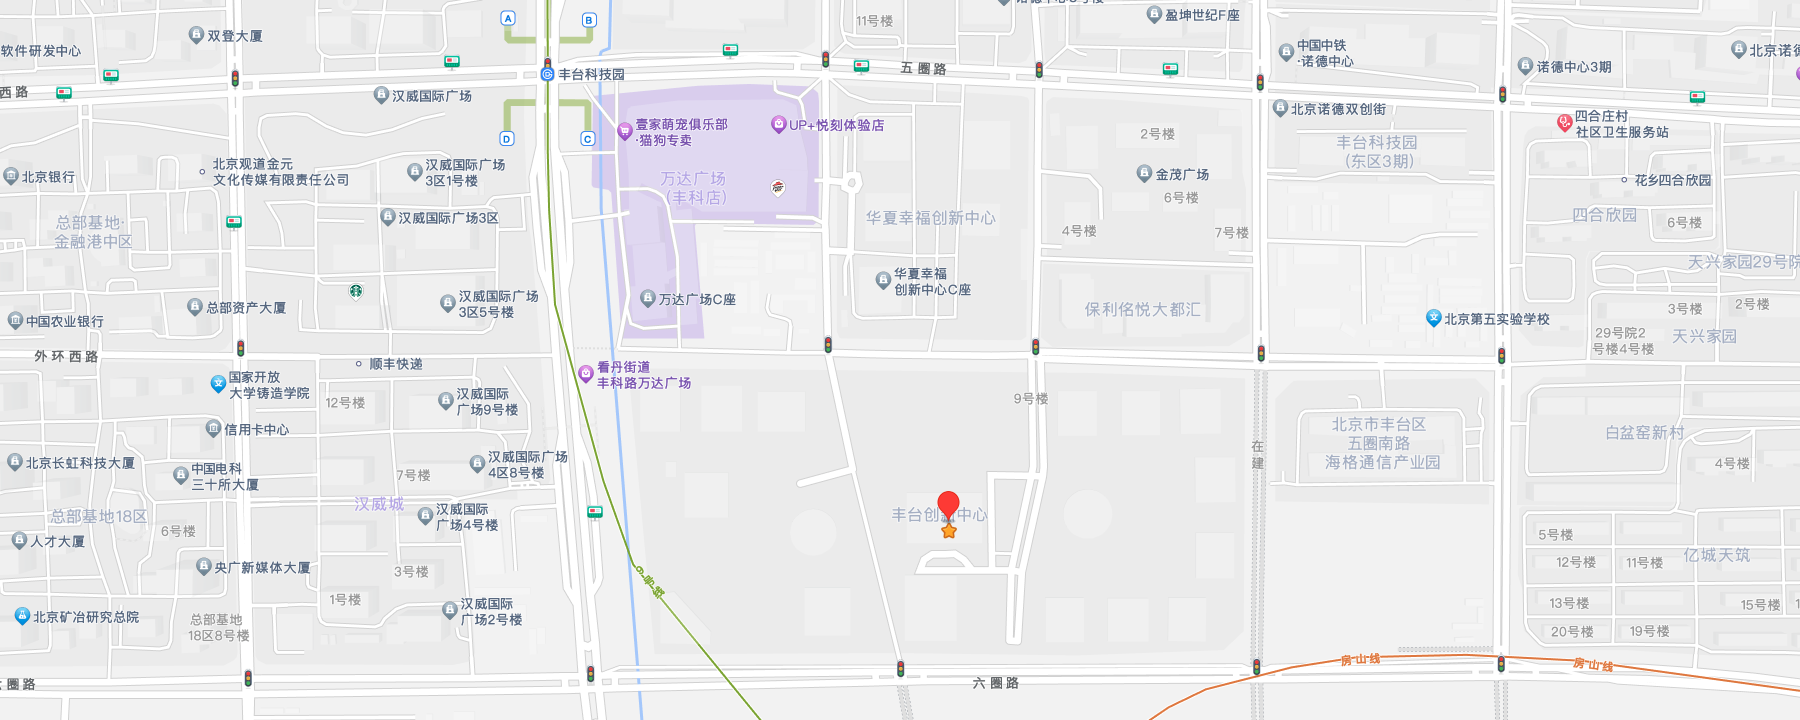 北京市丰台区汽车博物馆西路10号院9号楼1至13层101内6层601室